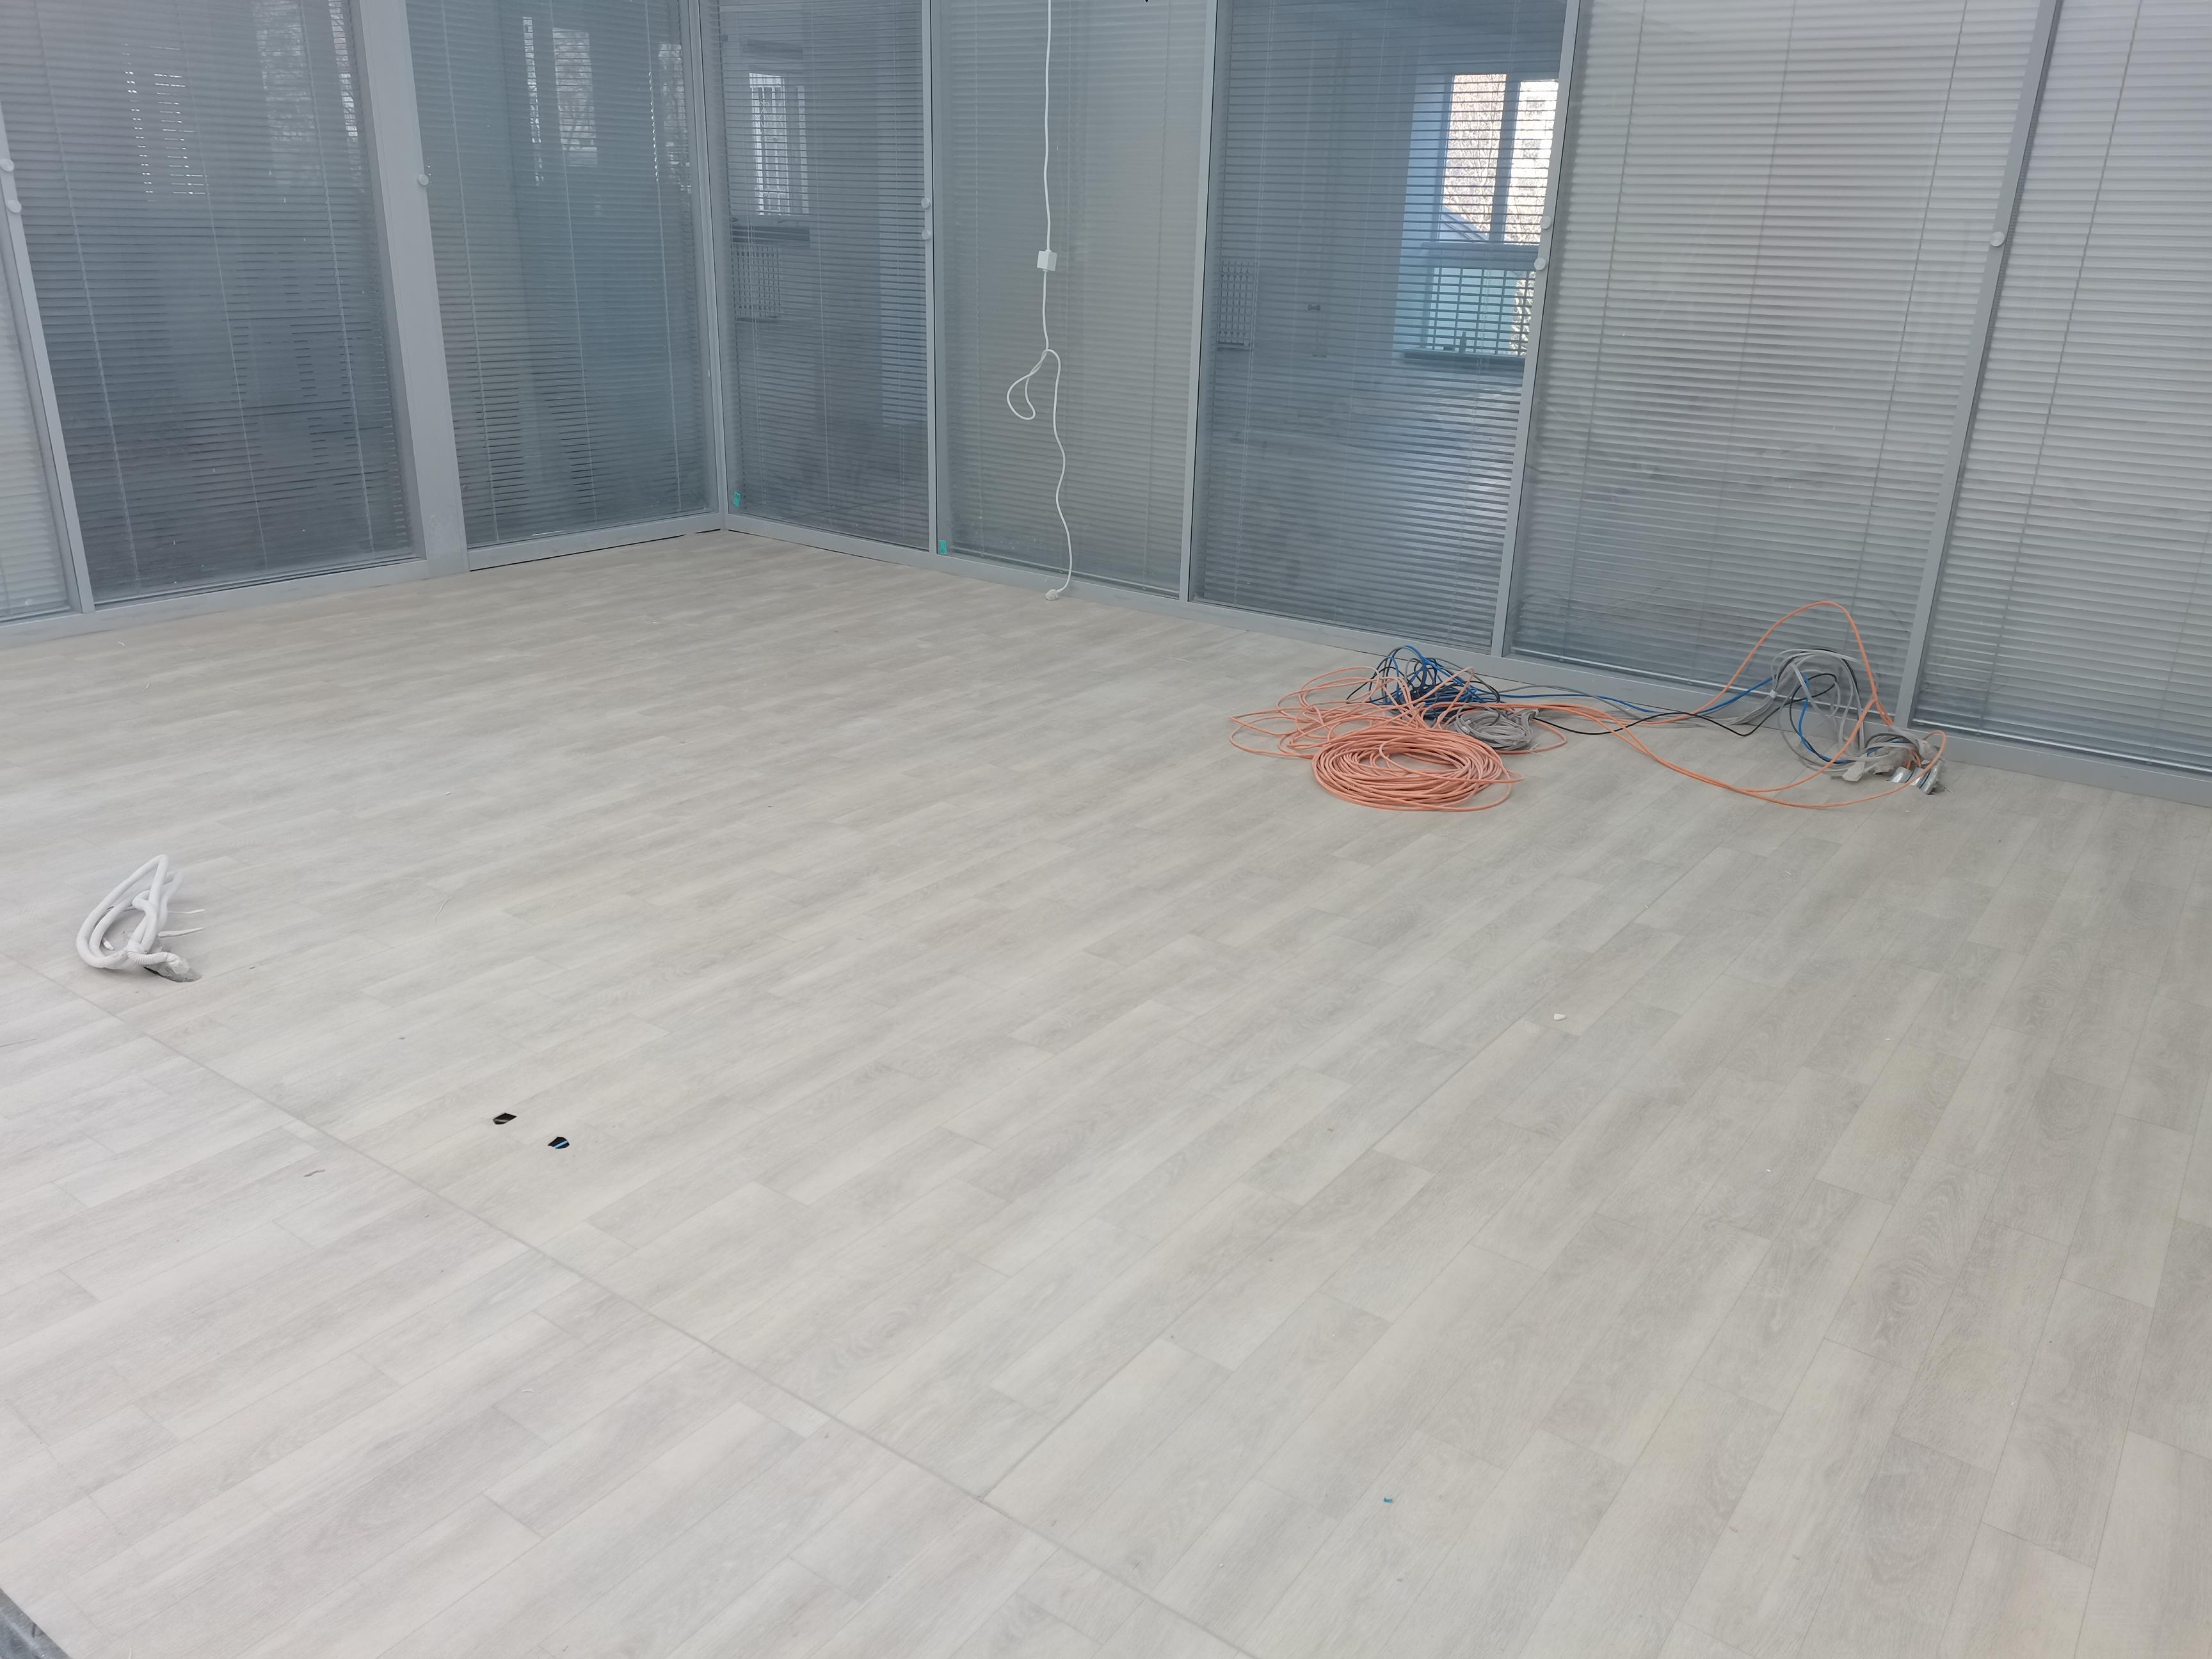 北京科技大学的科技楼-科技楼国际会议室安装完PVC地板后的效果图一